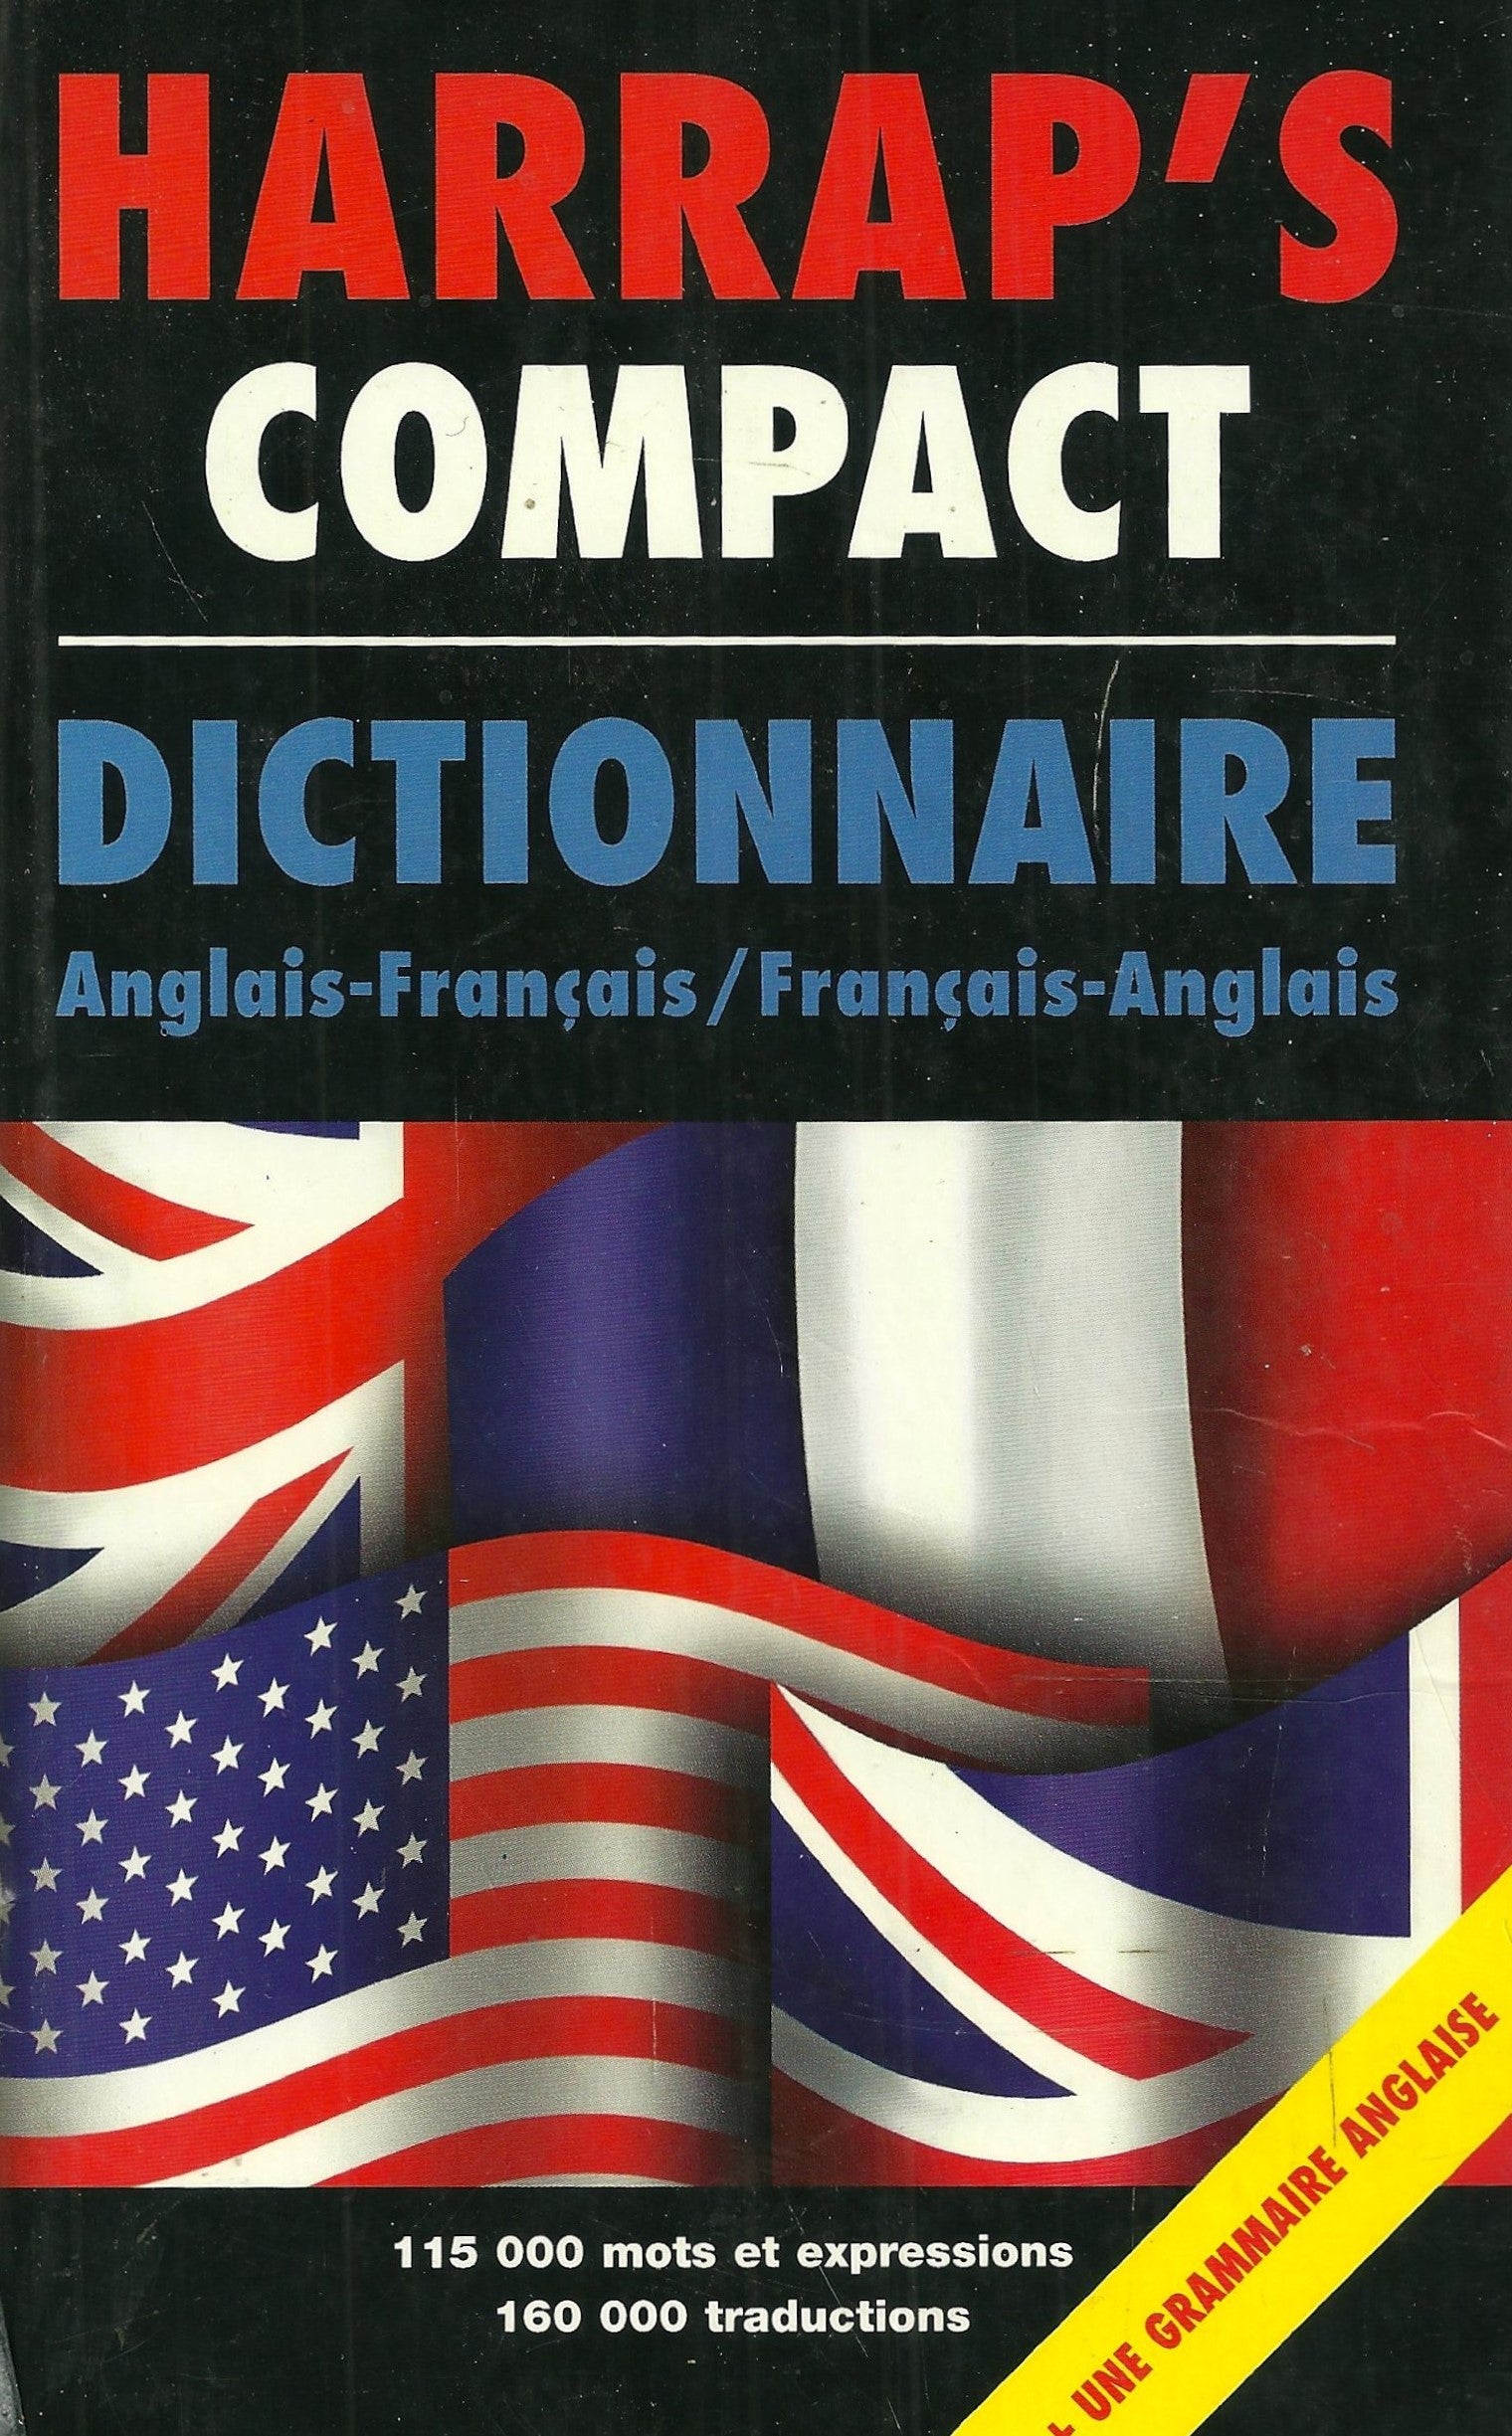 Harrap's Compact Dictionnaire Anglais-Français / Français-Anglais